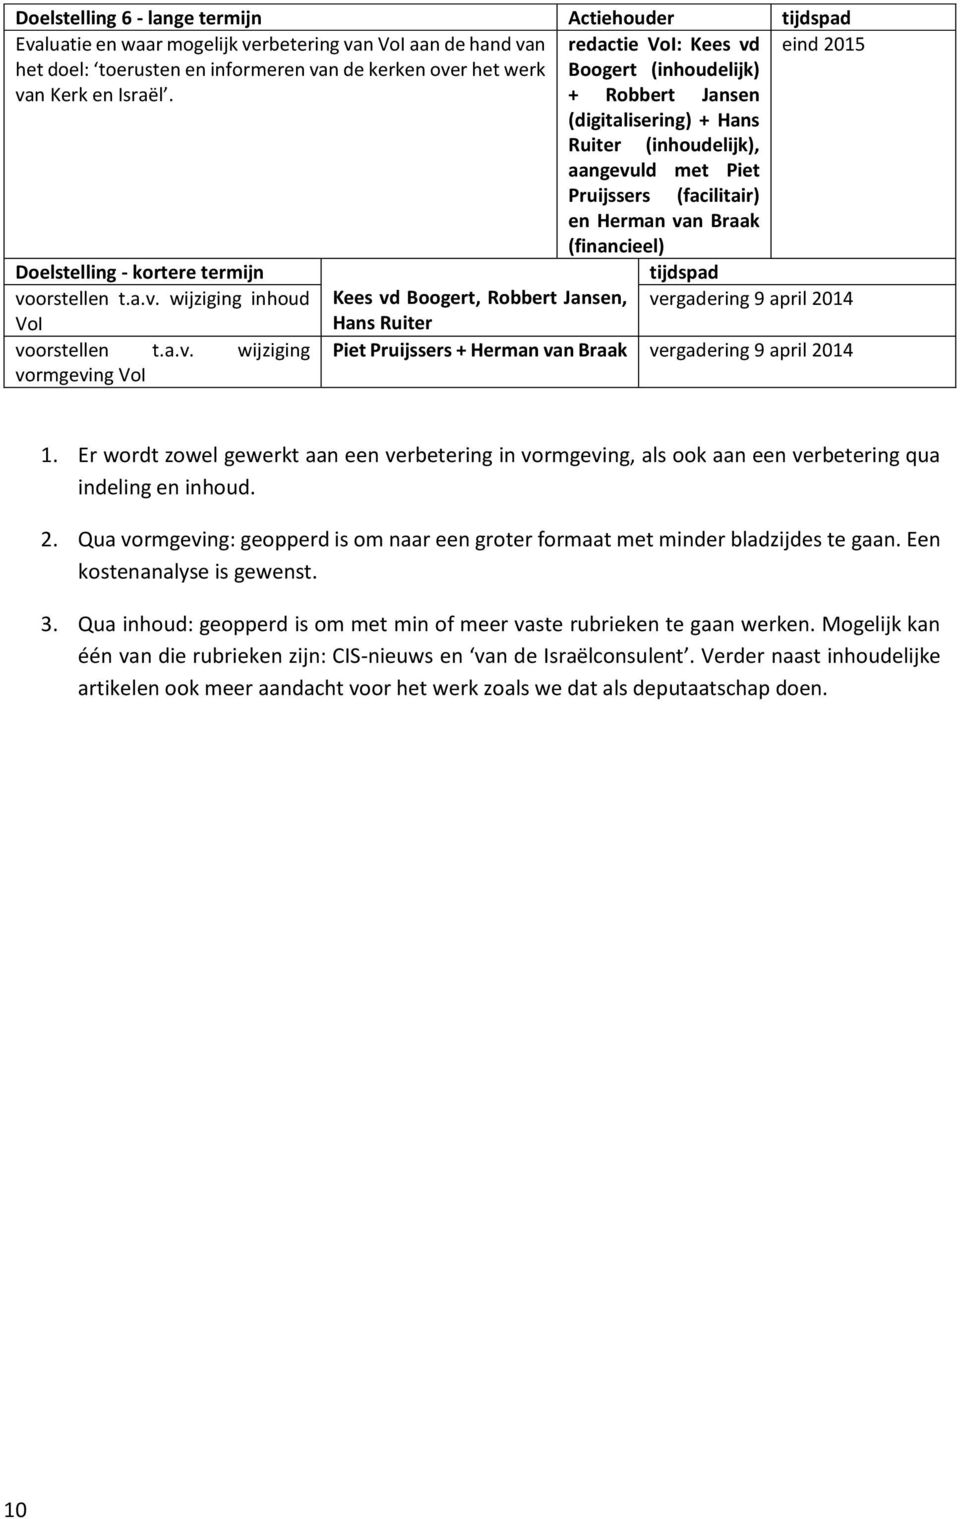 + Robbert Jansen (digitalisering) + Hans Ruiter (inhoudelijk), aangevuld met Piet Pruijssers (facilitair) en Herman van Braak (financieel) Doelstelling - kortere termijn tijdspad voorstellen t.a.v. wijziging inhoud Kees vd Boogert, Robbert Jansen, vergadering 9 april 2014 VoI Hans Ruiter voorstellen t.